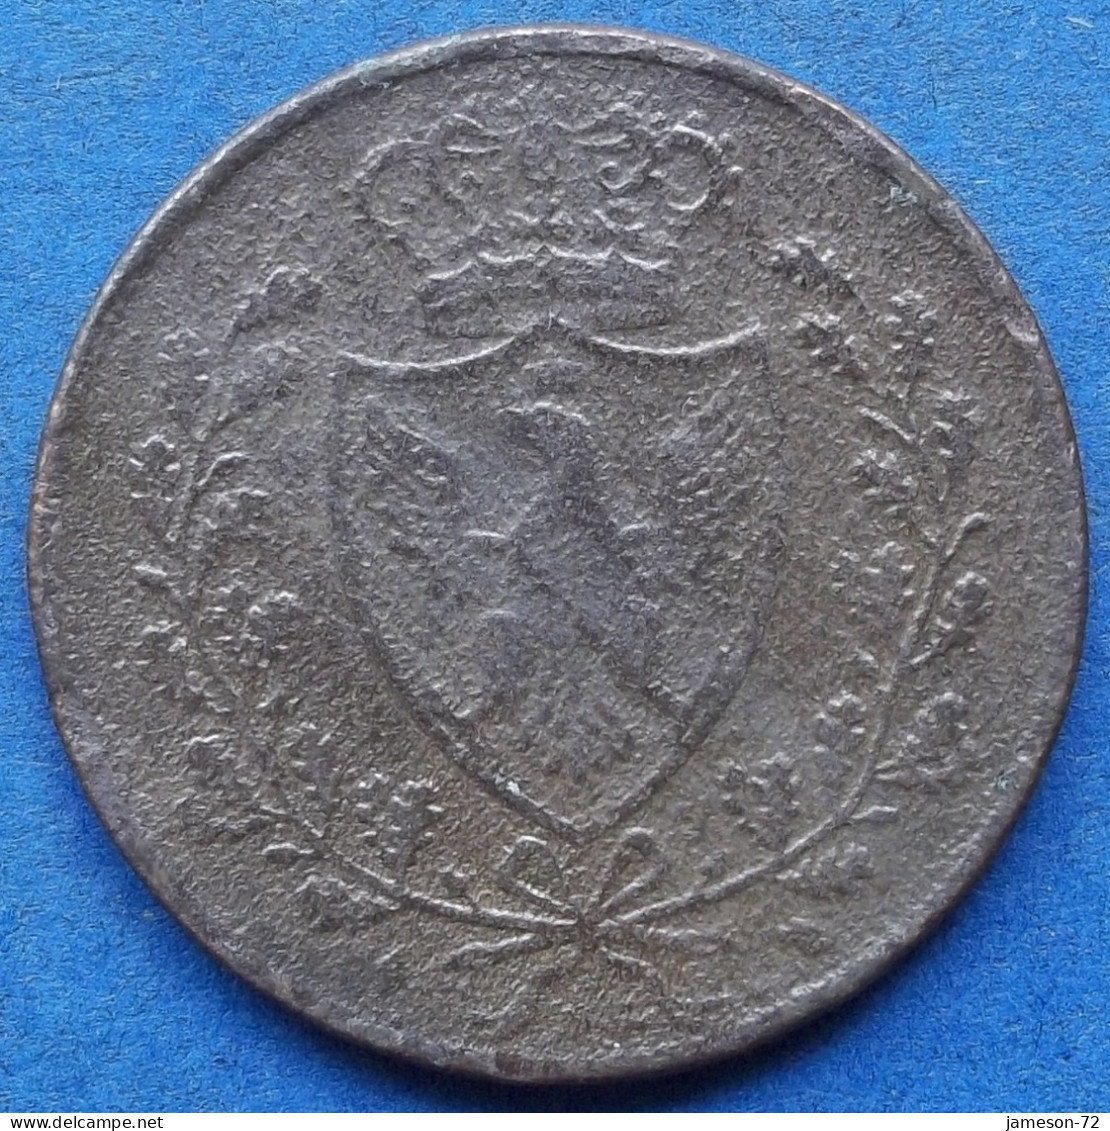 SARDINIA - 5 Centesimi 1826 KM# 127 Carlo Felice (1821-1831) - Edelweiss Coins - Italian Piedmont-Sardinia-Savoie